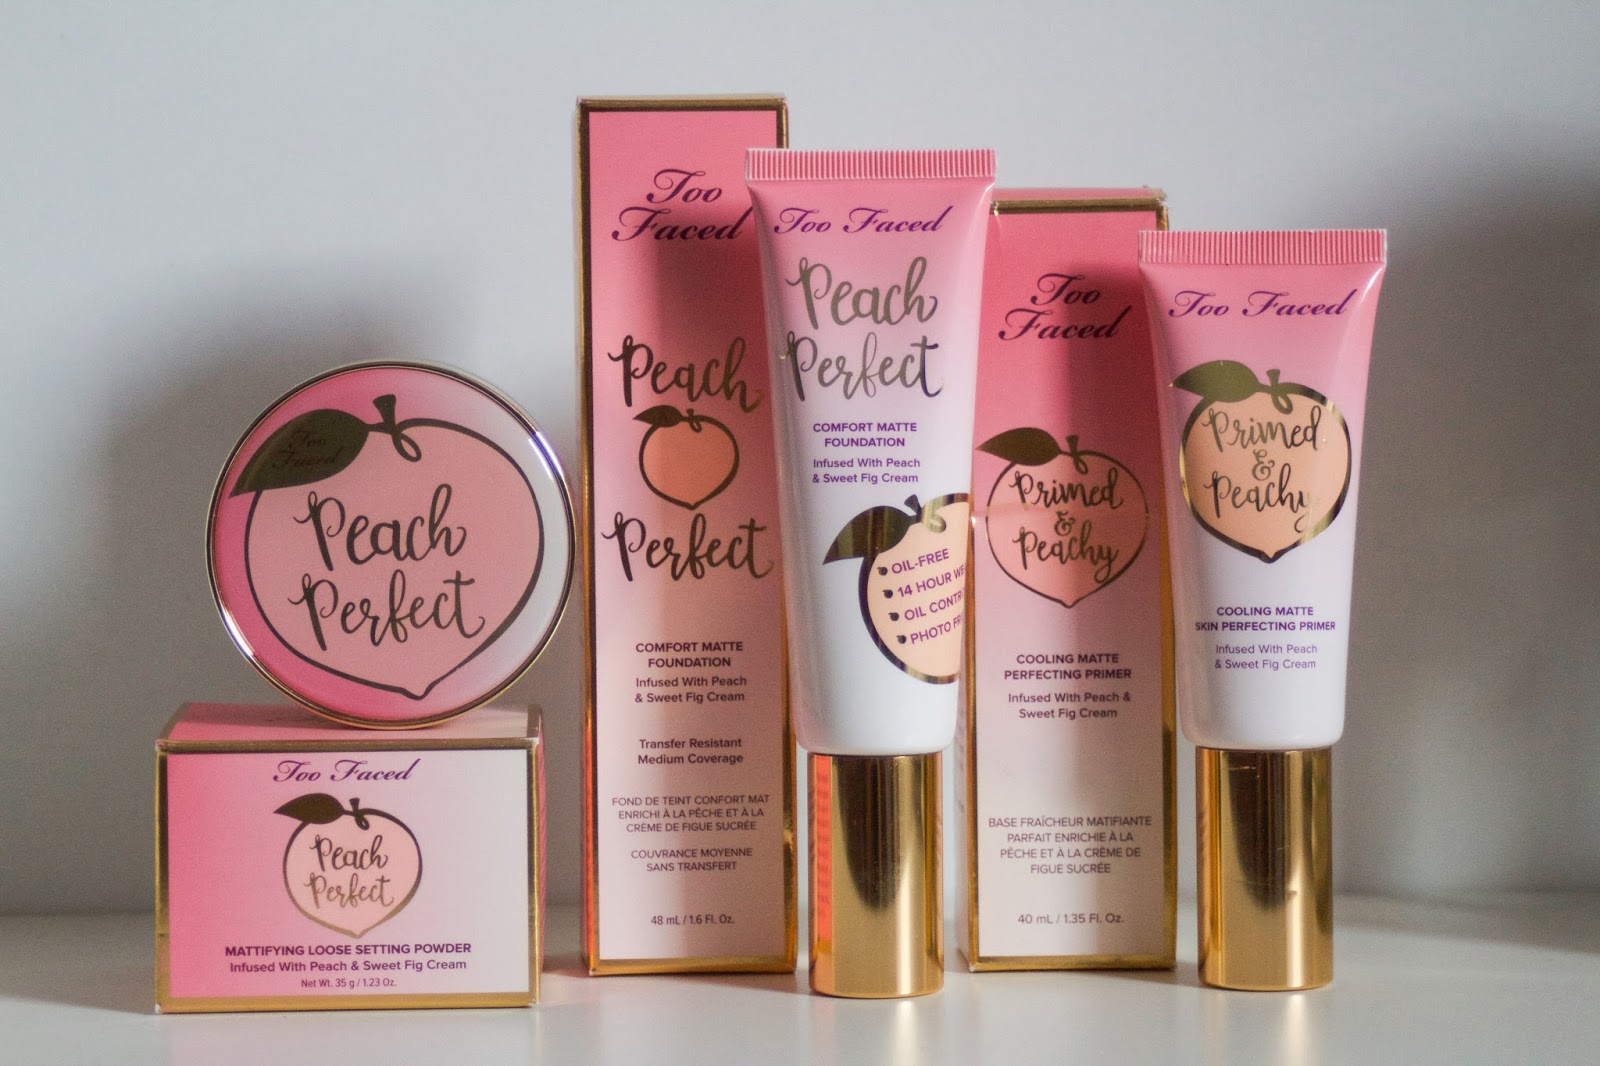 Too Faced Sweet Peach proizvodi: primer, tekući puder i puder u prahu